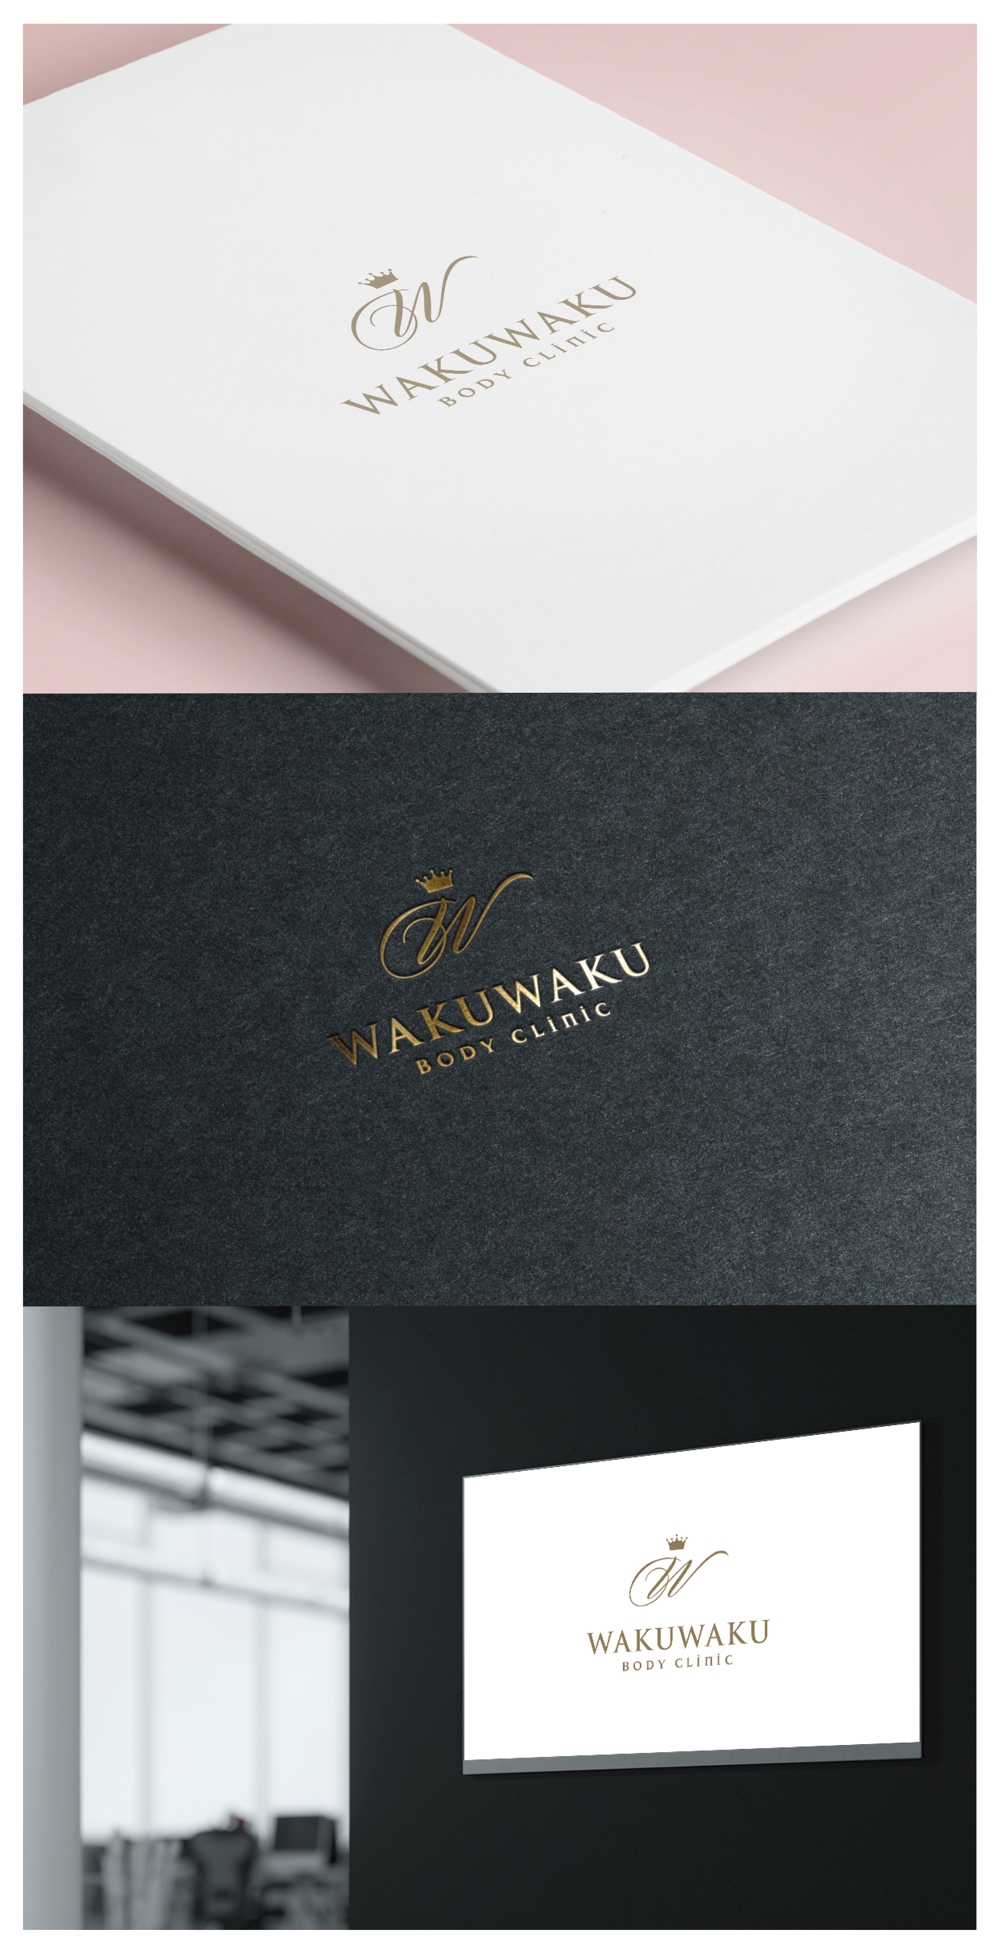 WAKUWAKU BODY CLINIC_logo01_01.jpg